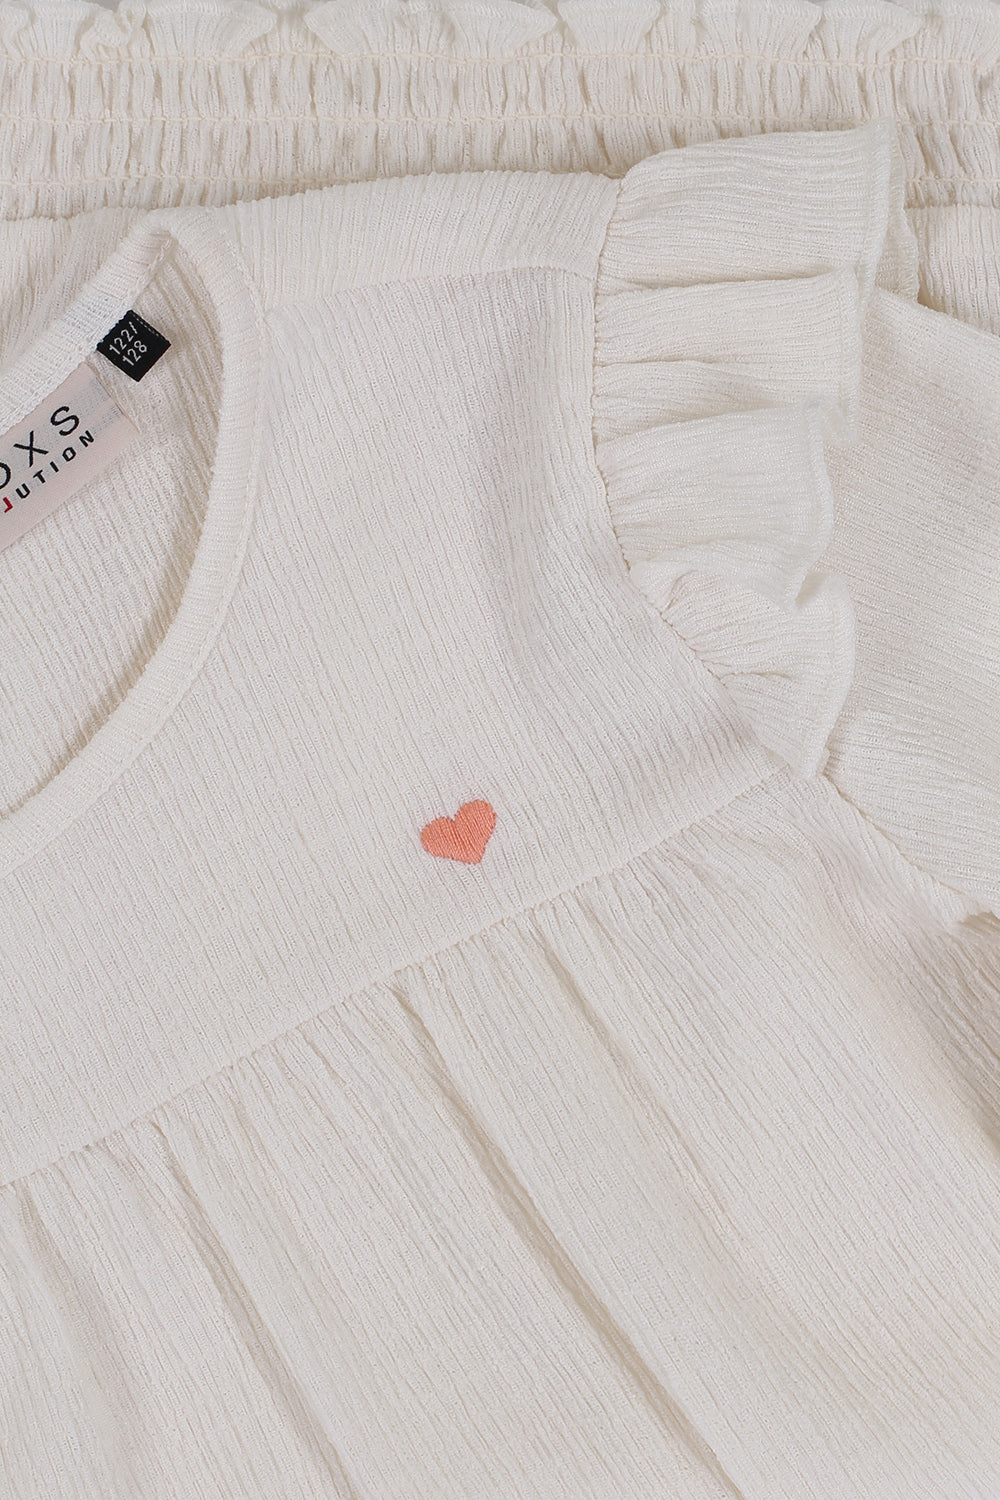 Meisjes Crinckle Top With Embroidery van LOOXS Little in de kleur Warm white in maat 128.